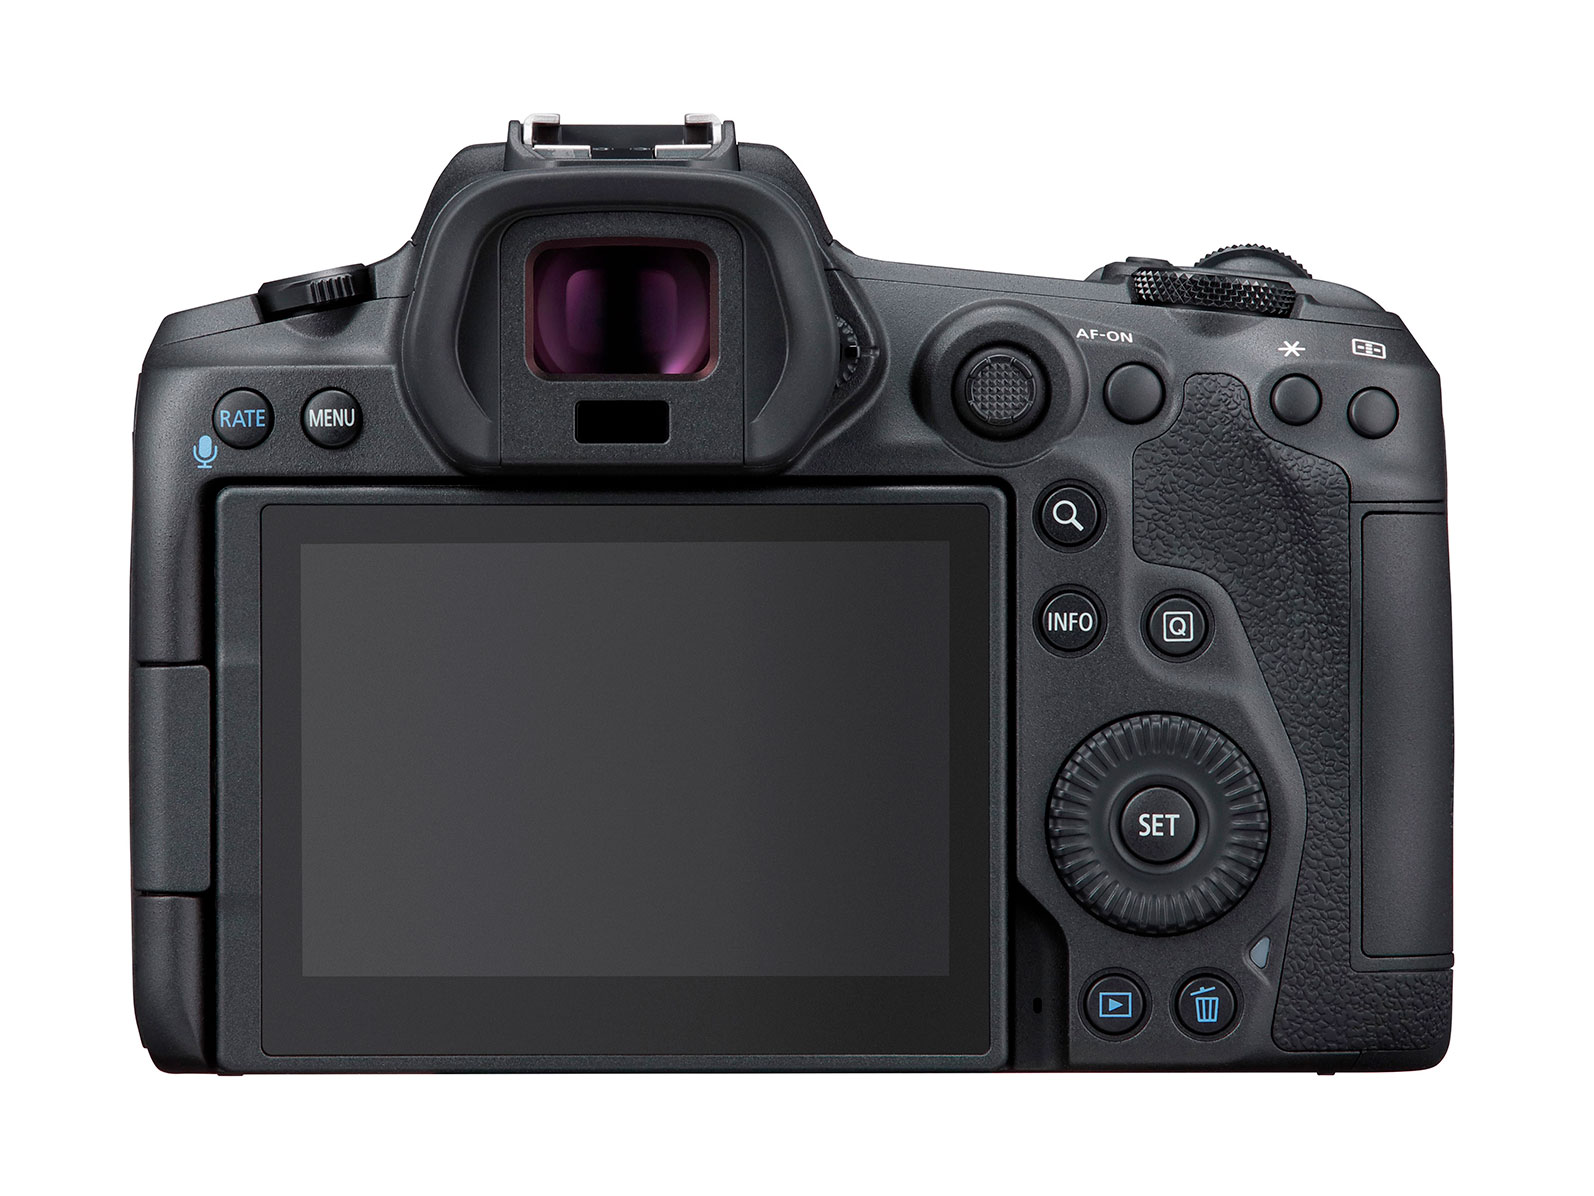 Canon chính thức ra mắt EOS R5 với giá 3899 USD: cảm biến 45MP, quay phim RAW 8K, 4K 60fps, chip DIGIC X 